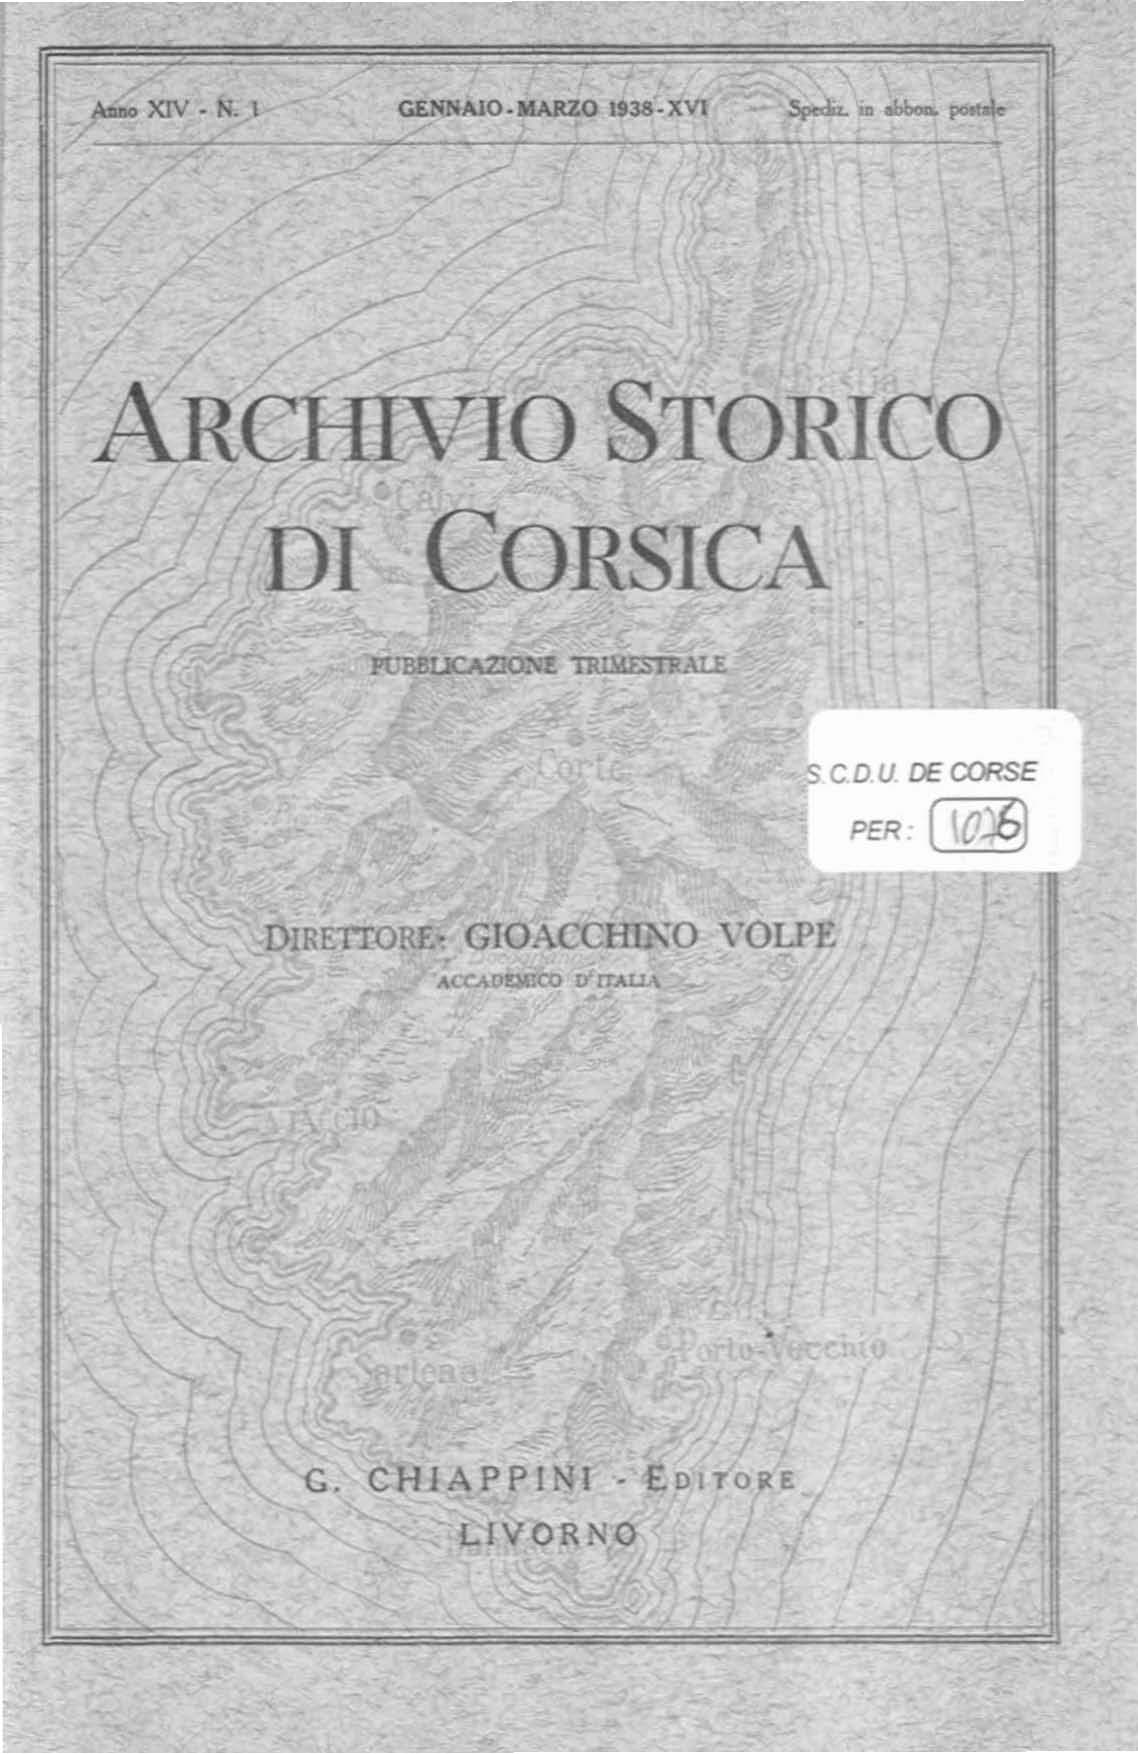 >Archivio Storico di Corsica (1938)